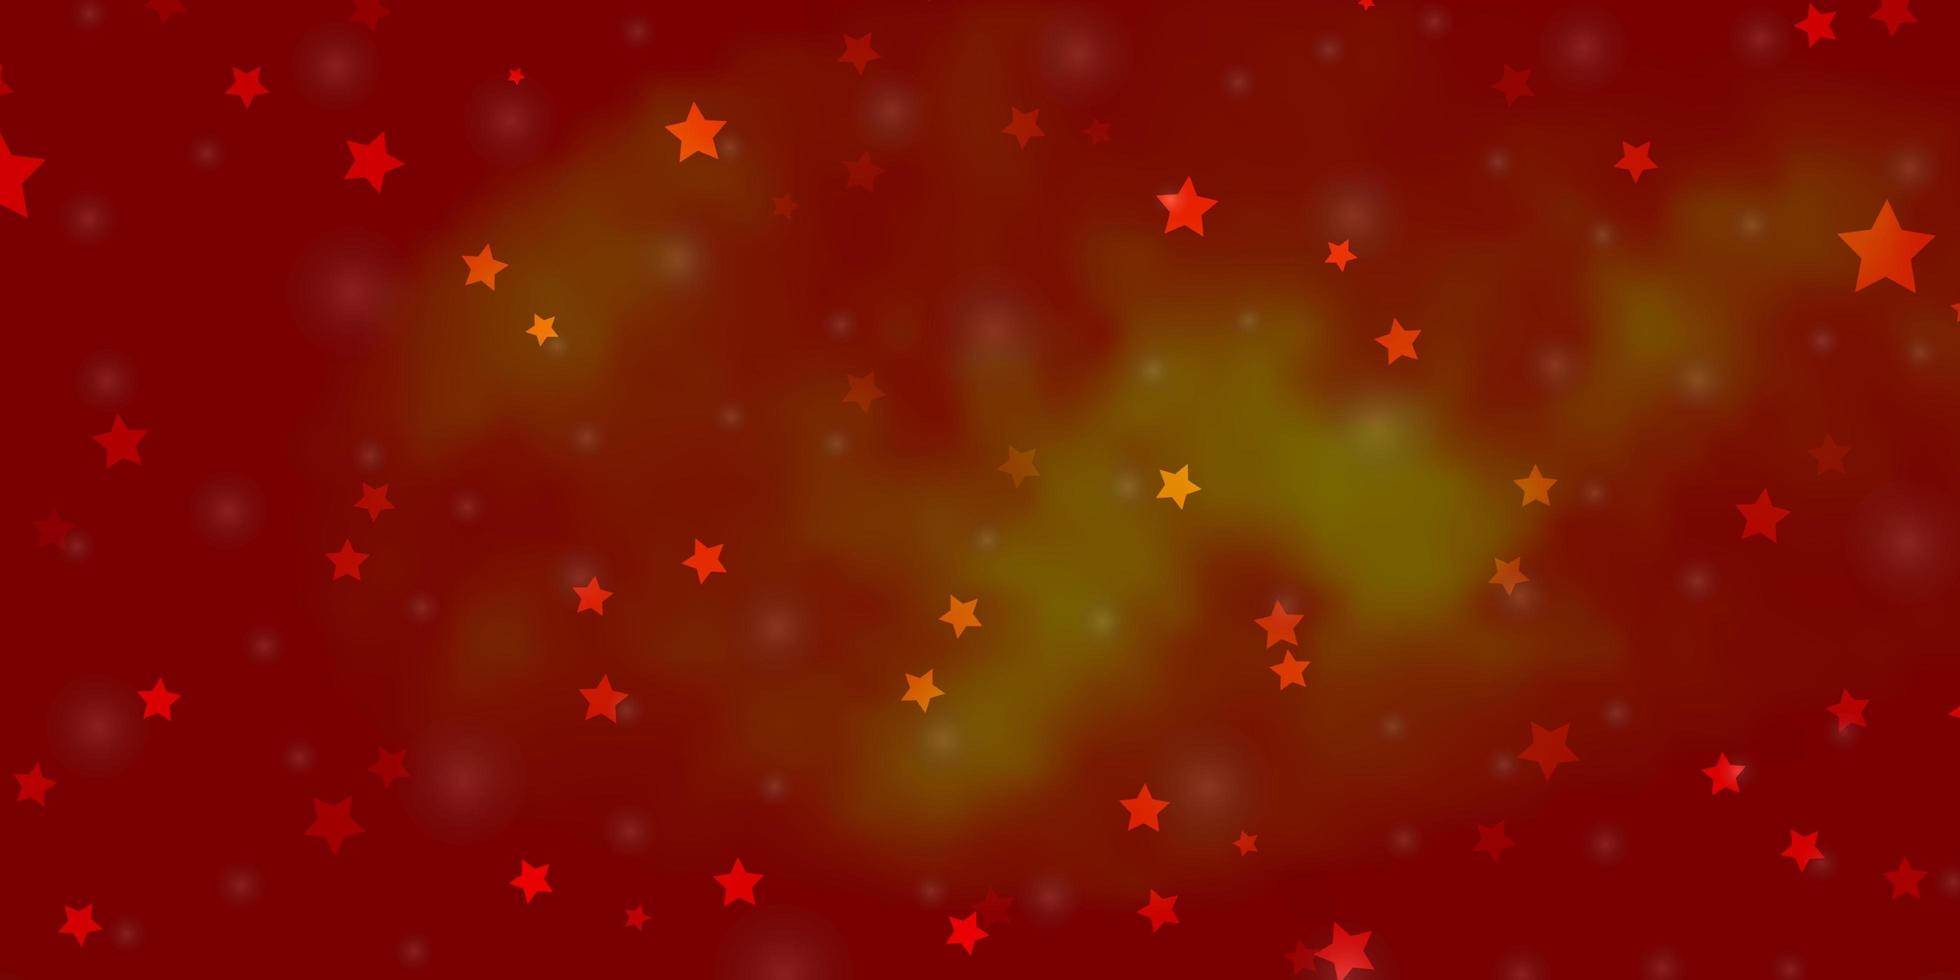 sfondo vettoriale arancione chiaro con stelle colorate. illustrazione colorata con stelle sfumate astratte. modello per annuncio di capodanno, libretti.